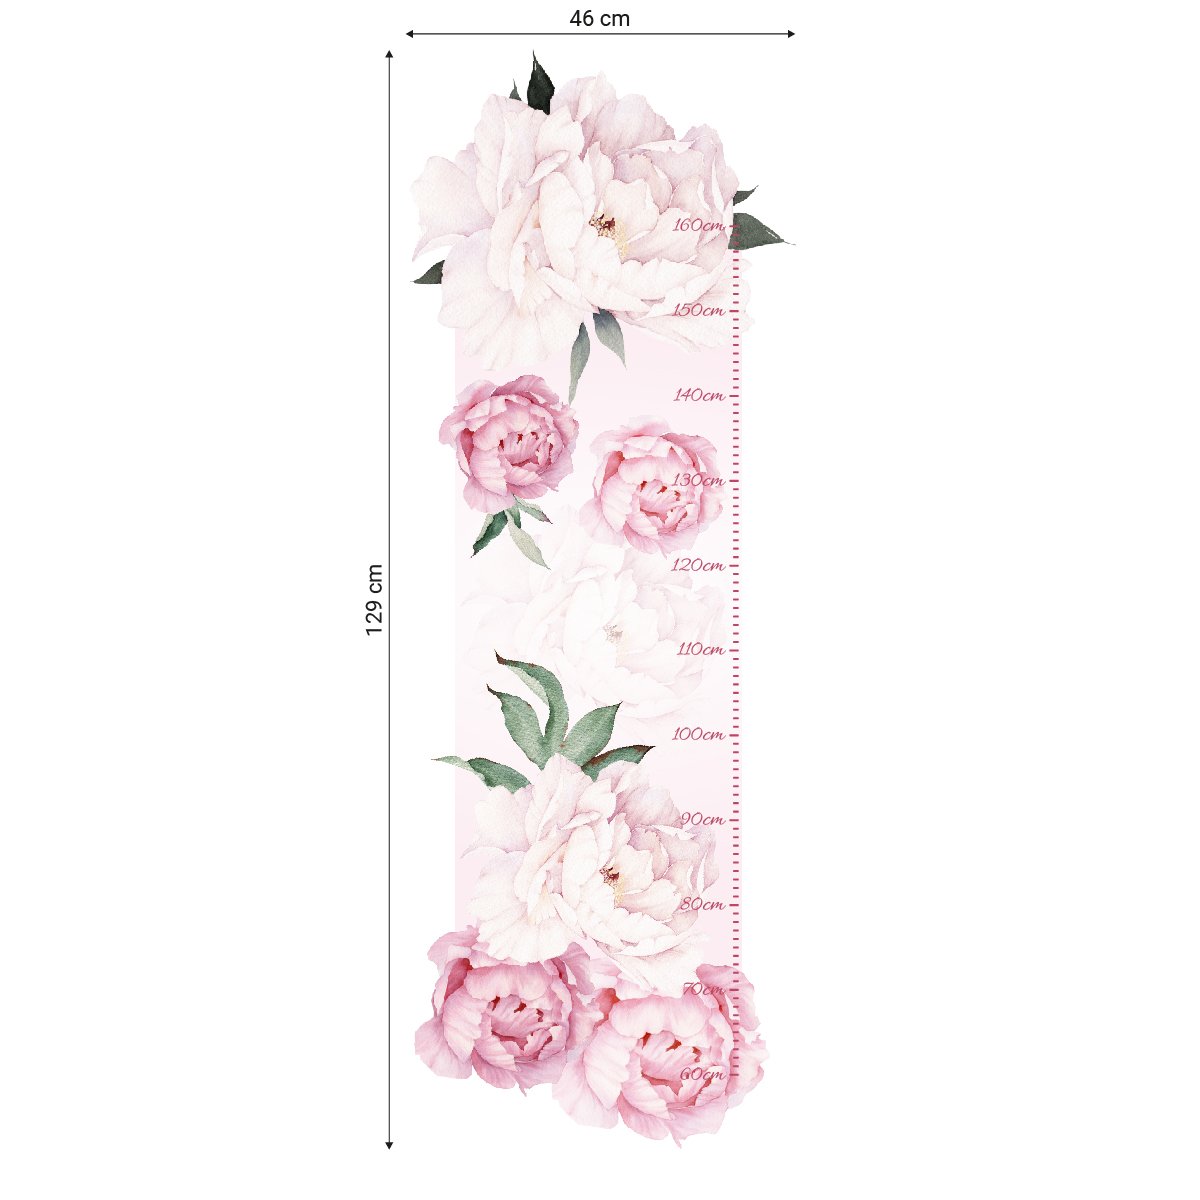 Naklejka na ścianę dla dziecka miarka wzrostu różowe kwiaty#kolor_rozowy-mix